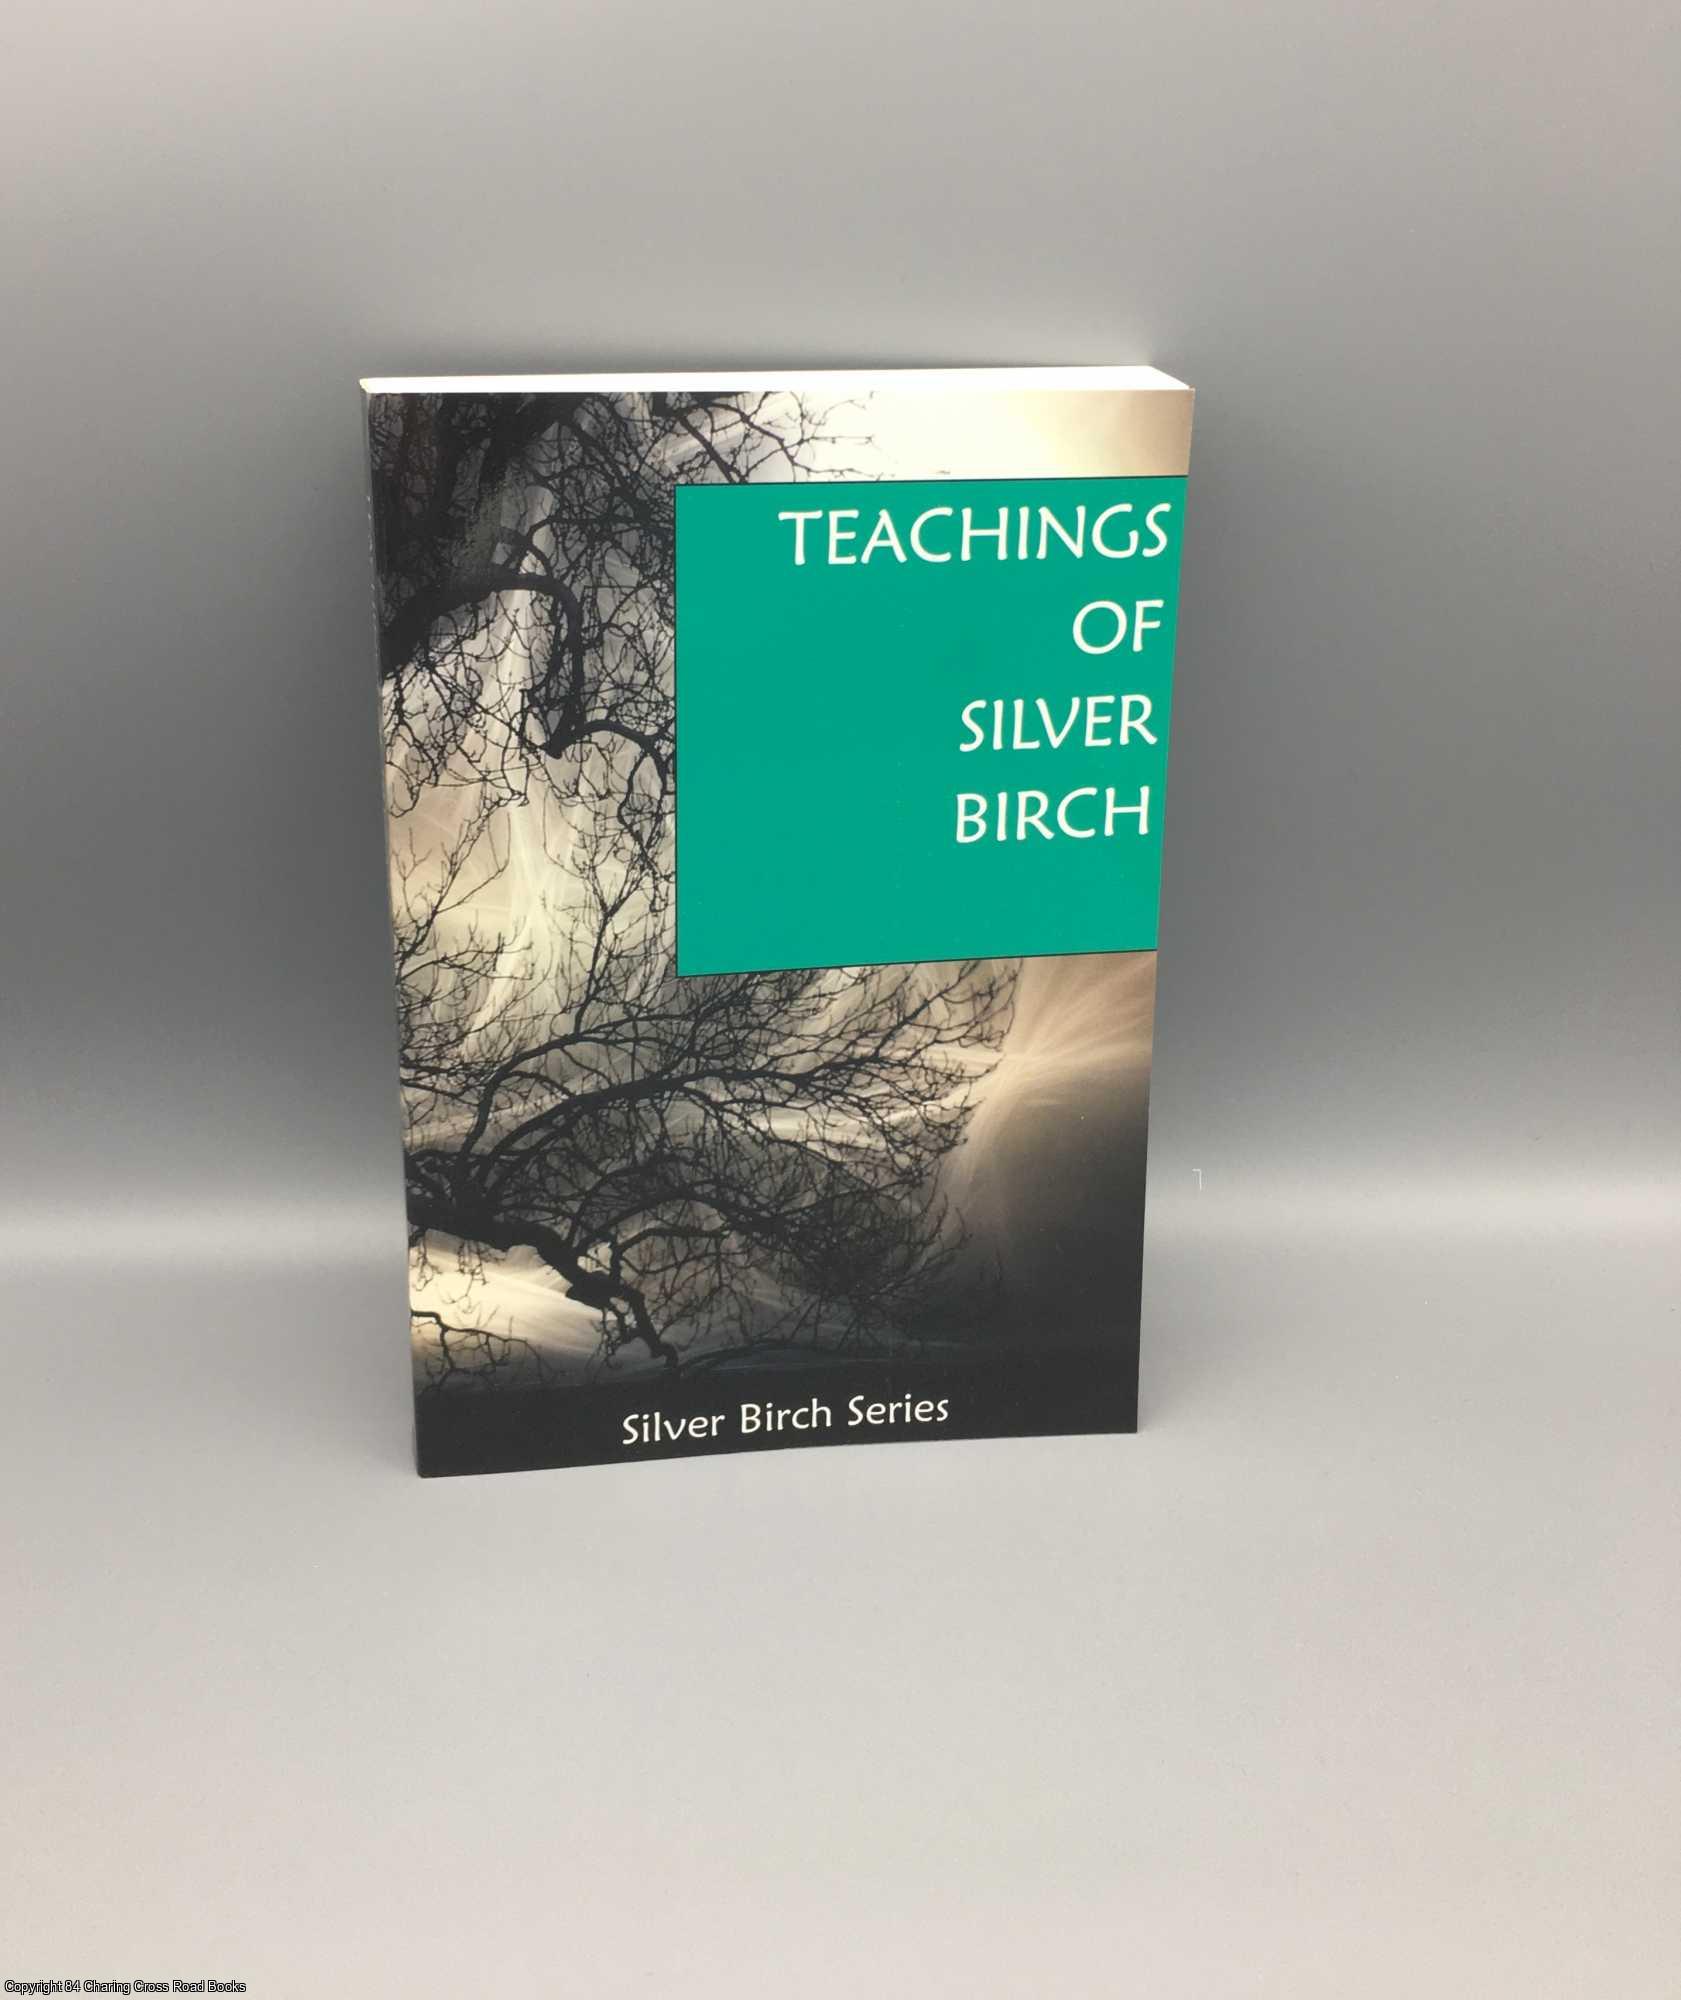 Silver Birch; A. W. Austen - The Teachings of Silver Birch